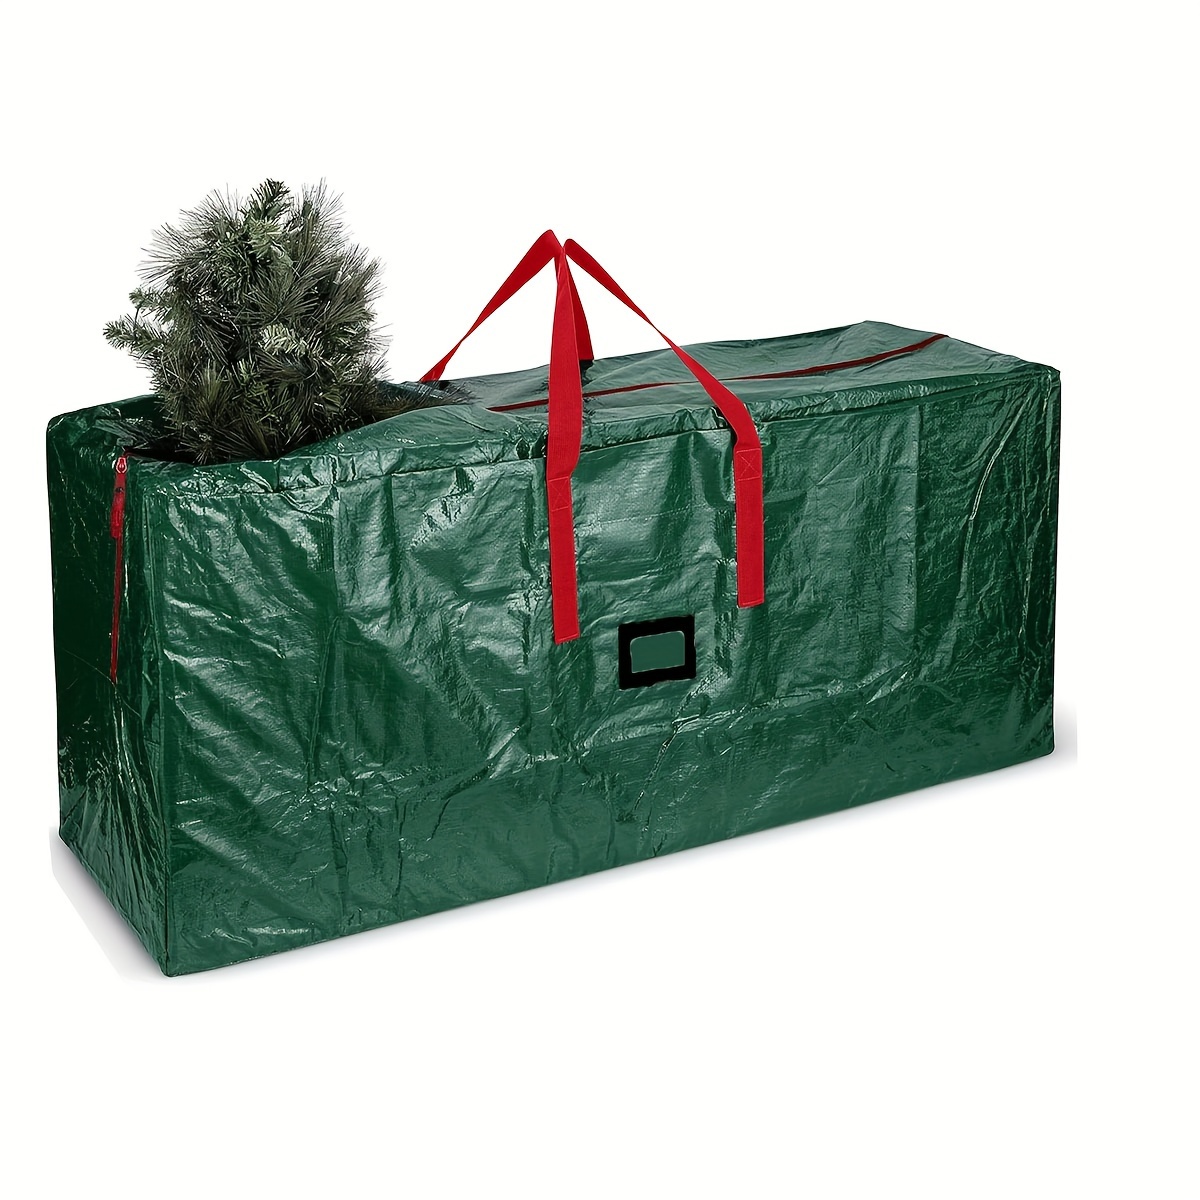 Sac de rangement extra large pour sapin de Noël - Pour arbres